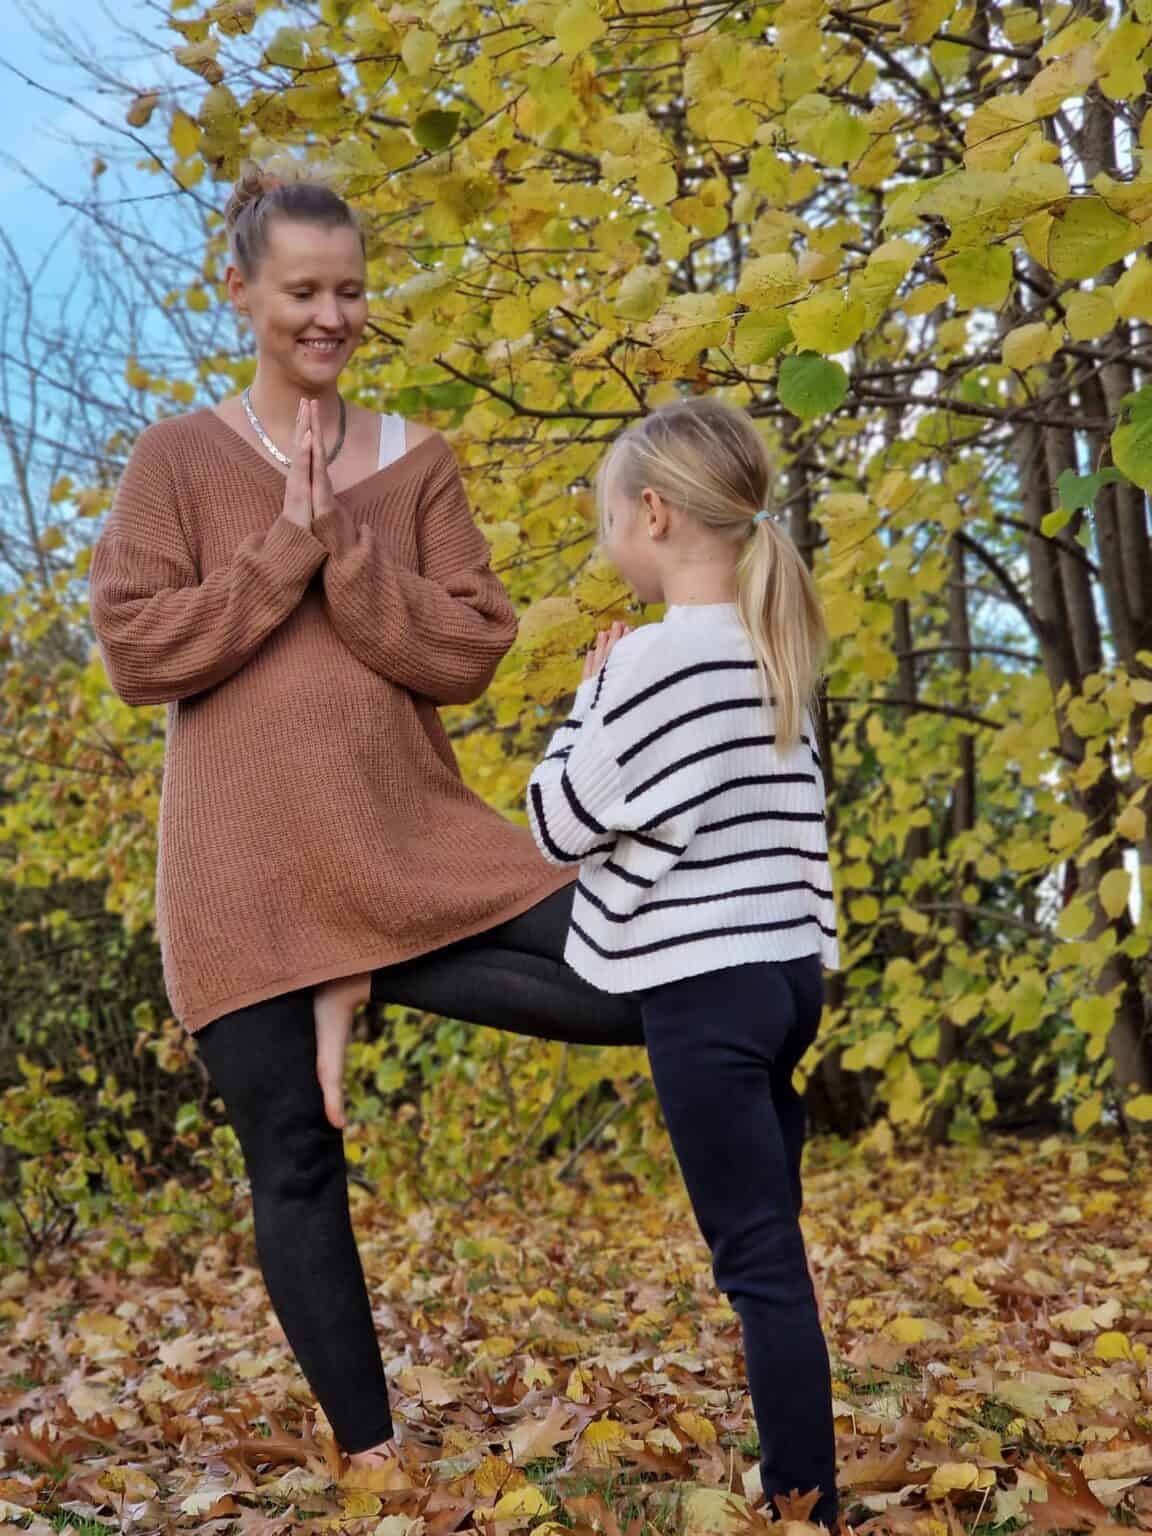 Familienyoga und Kinderyoga Lehrerin Mandy steht gemeinsam mit ihrer Tochter in einer Yogapose in herbstlicher Umgebung